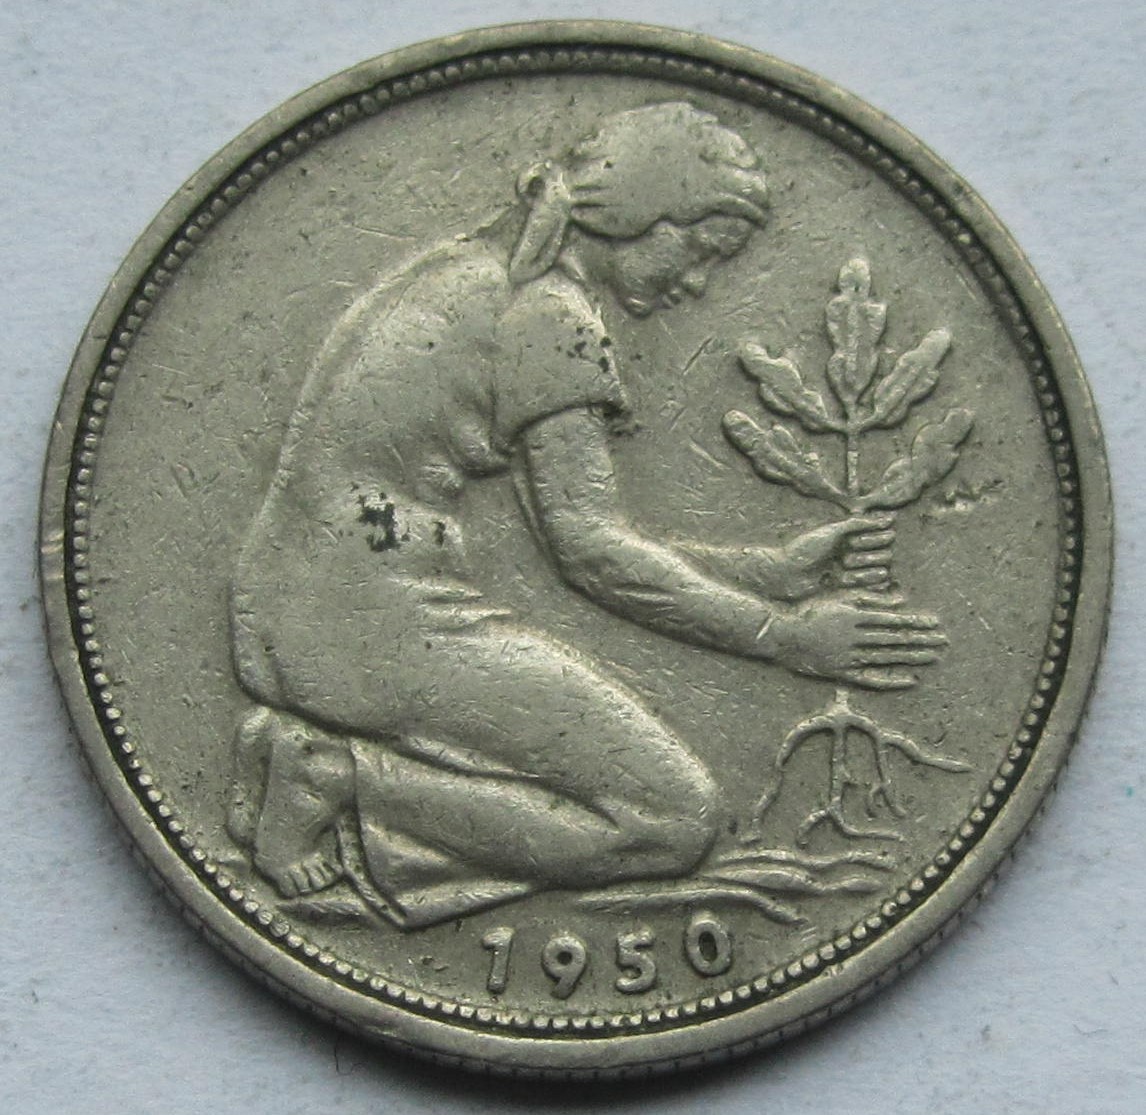  Deutschland: 50 Pfennig Bank deutscher Länder 1950 G   